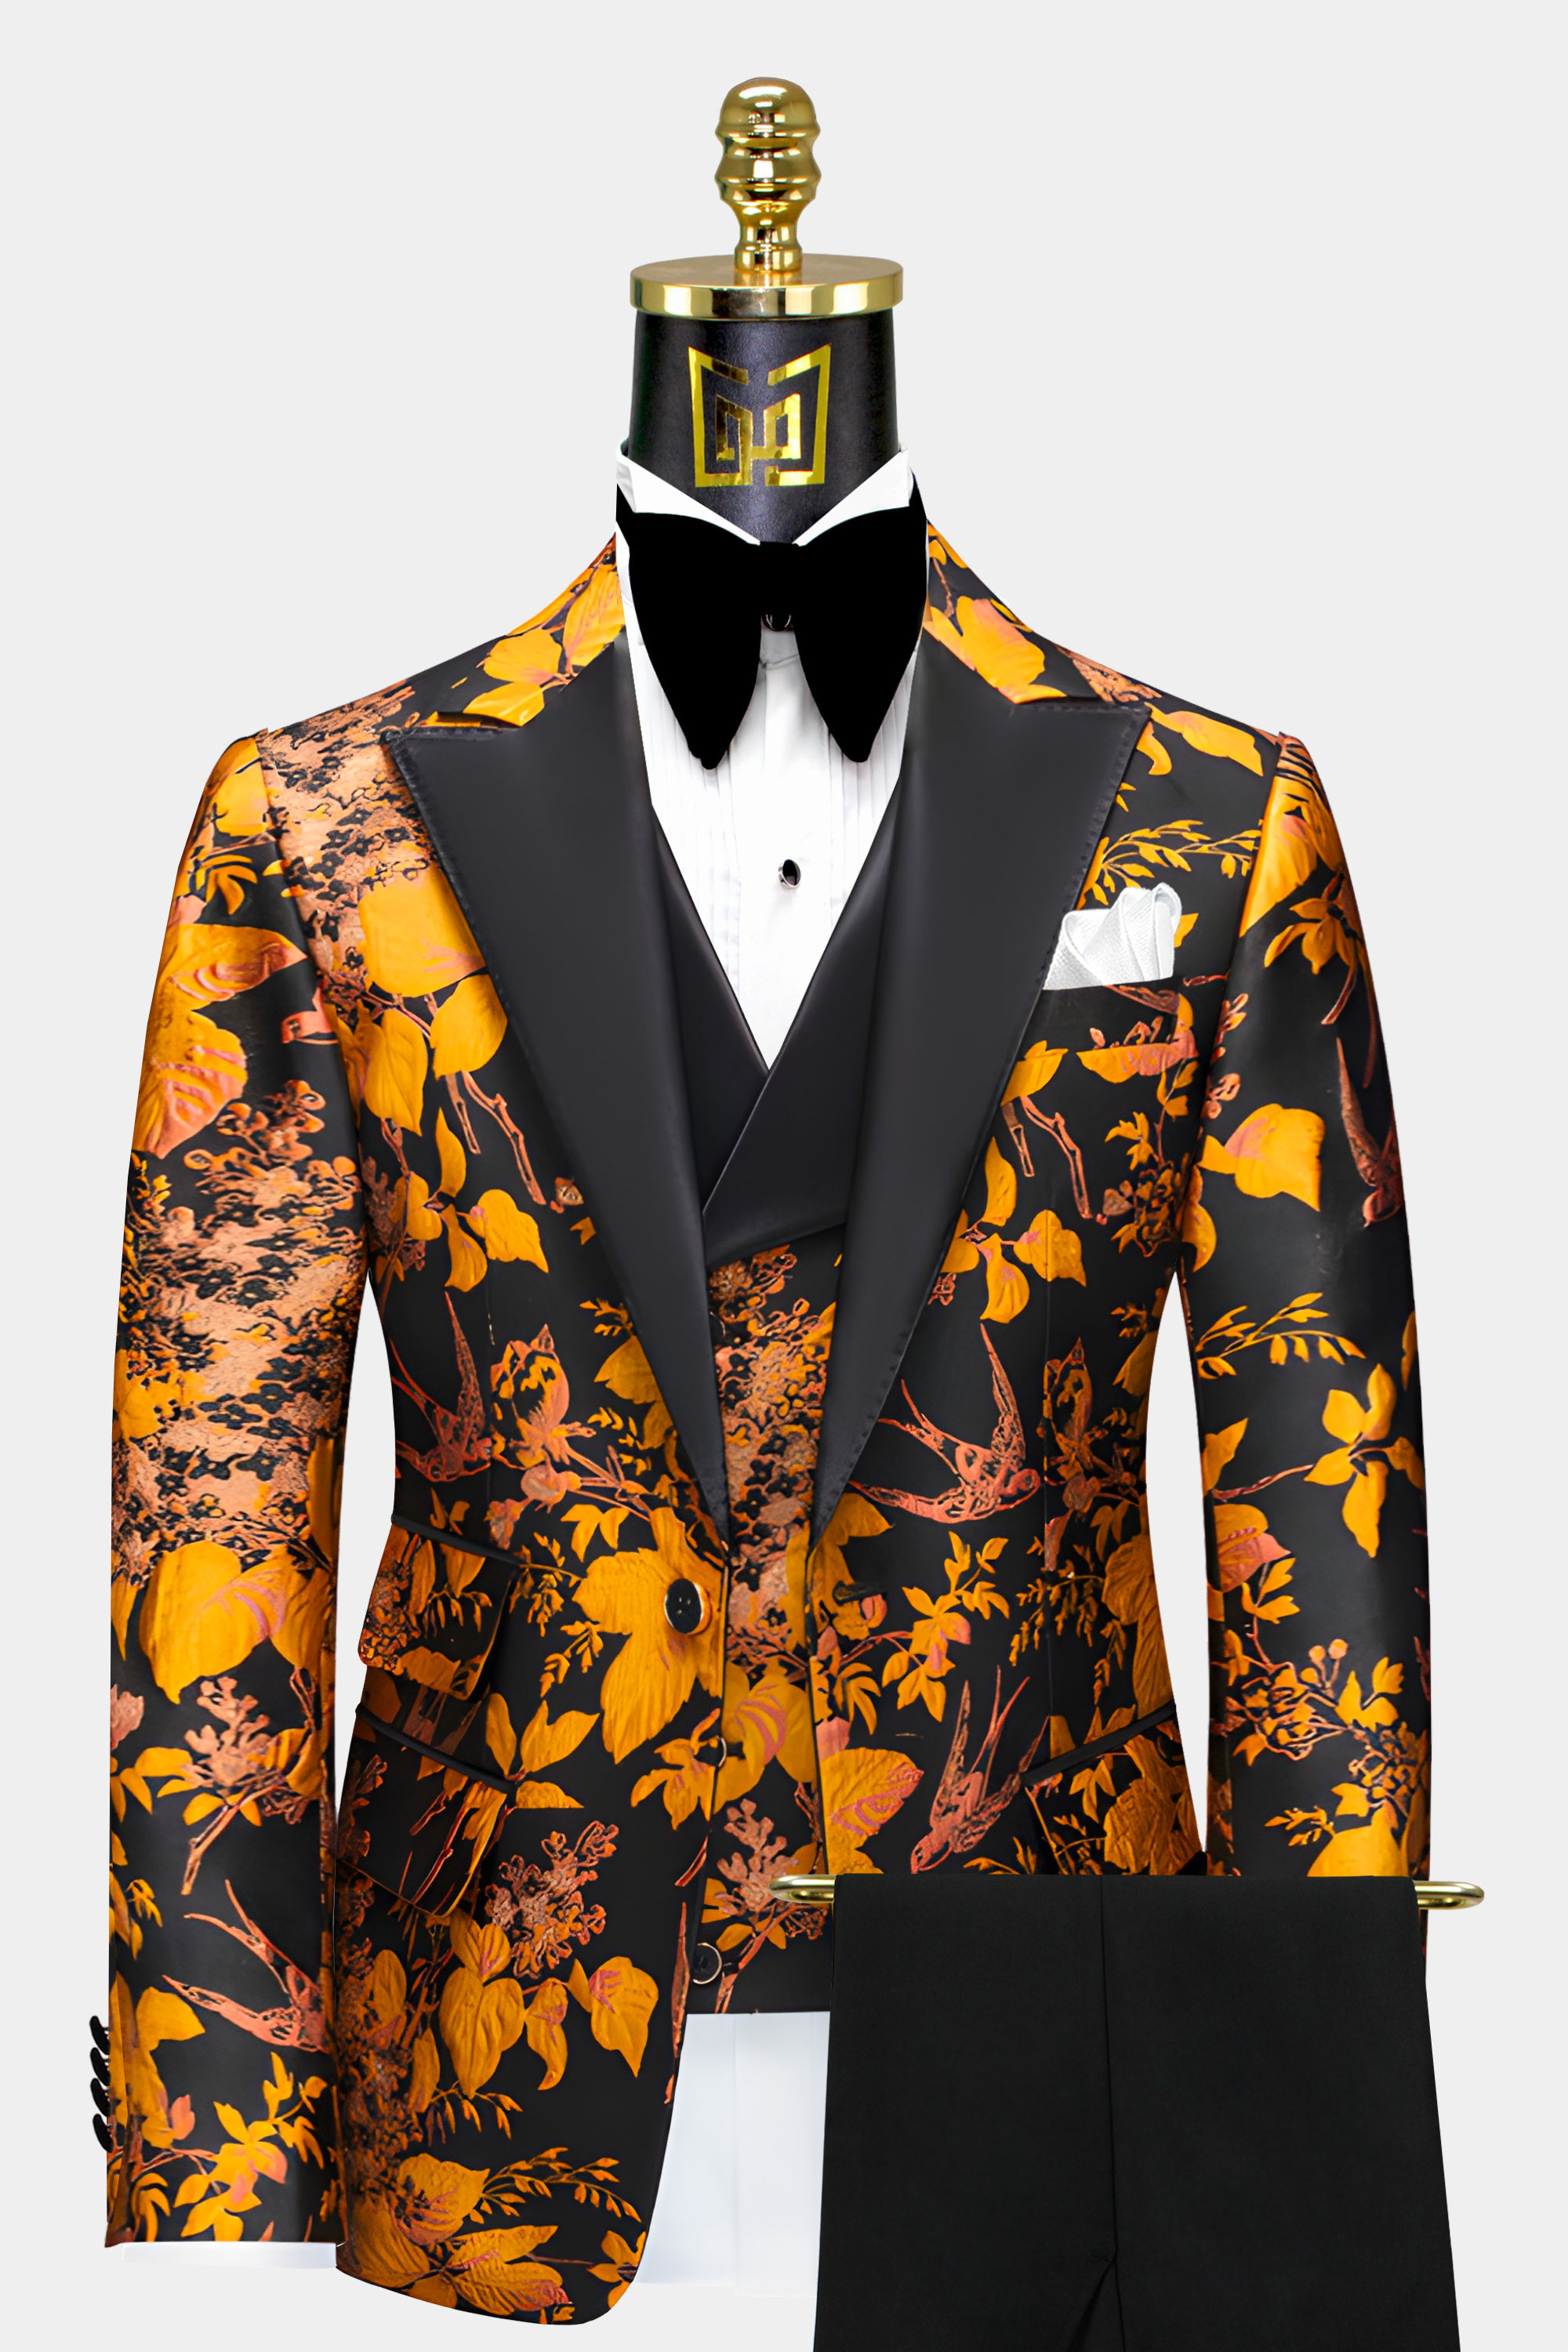 Black-and-Marigold-Groom-Wedding-Suit-Prom-Tuxedo-from-Gentlemansguru.com